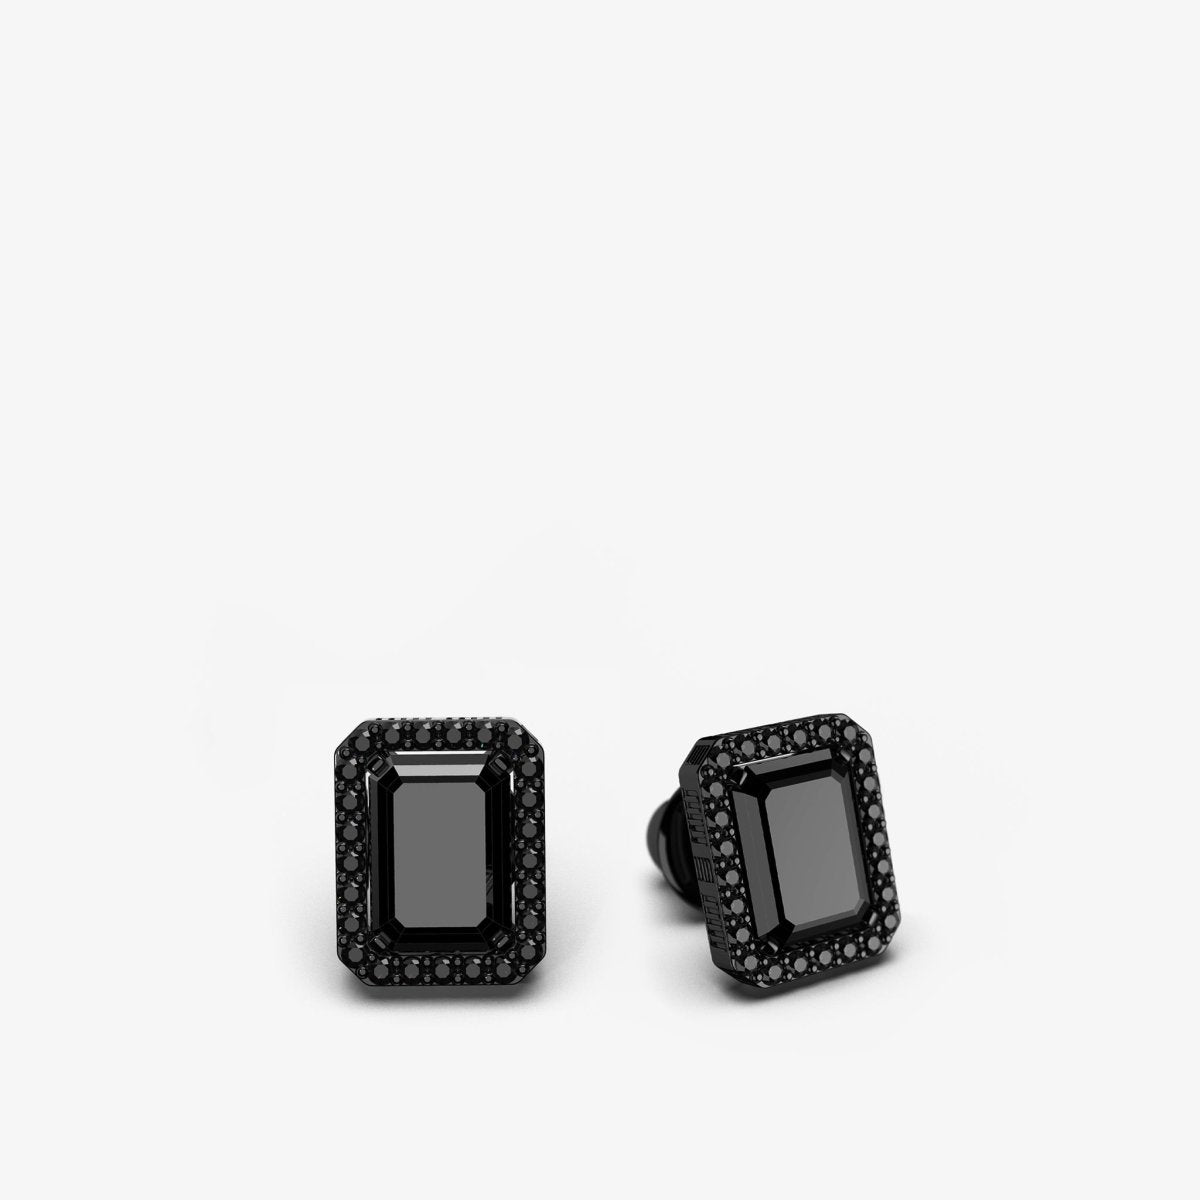 Jewel Earrings Black Onyx